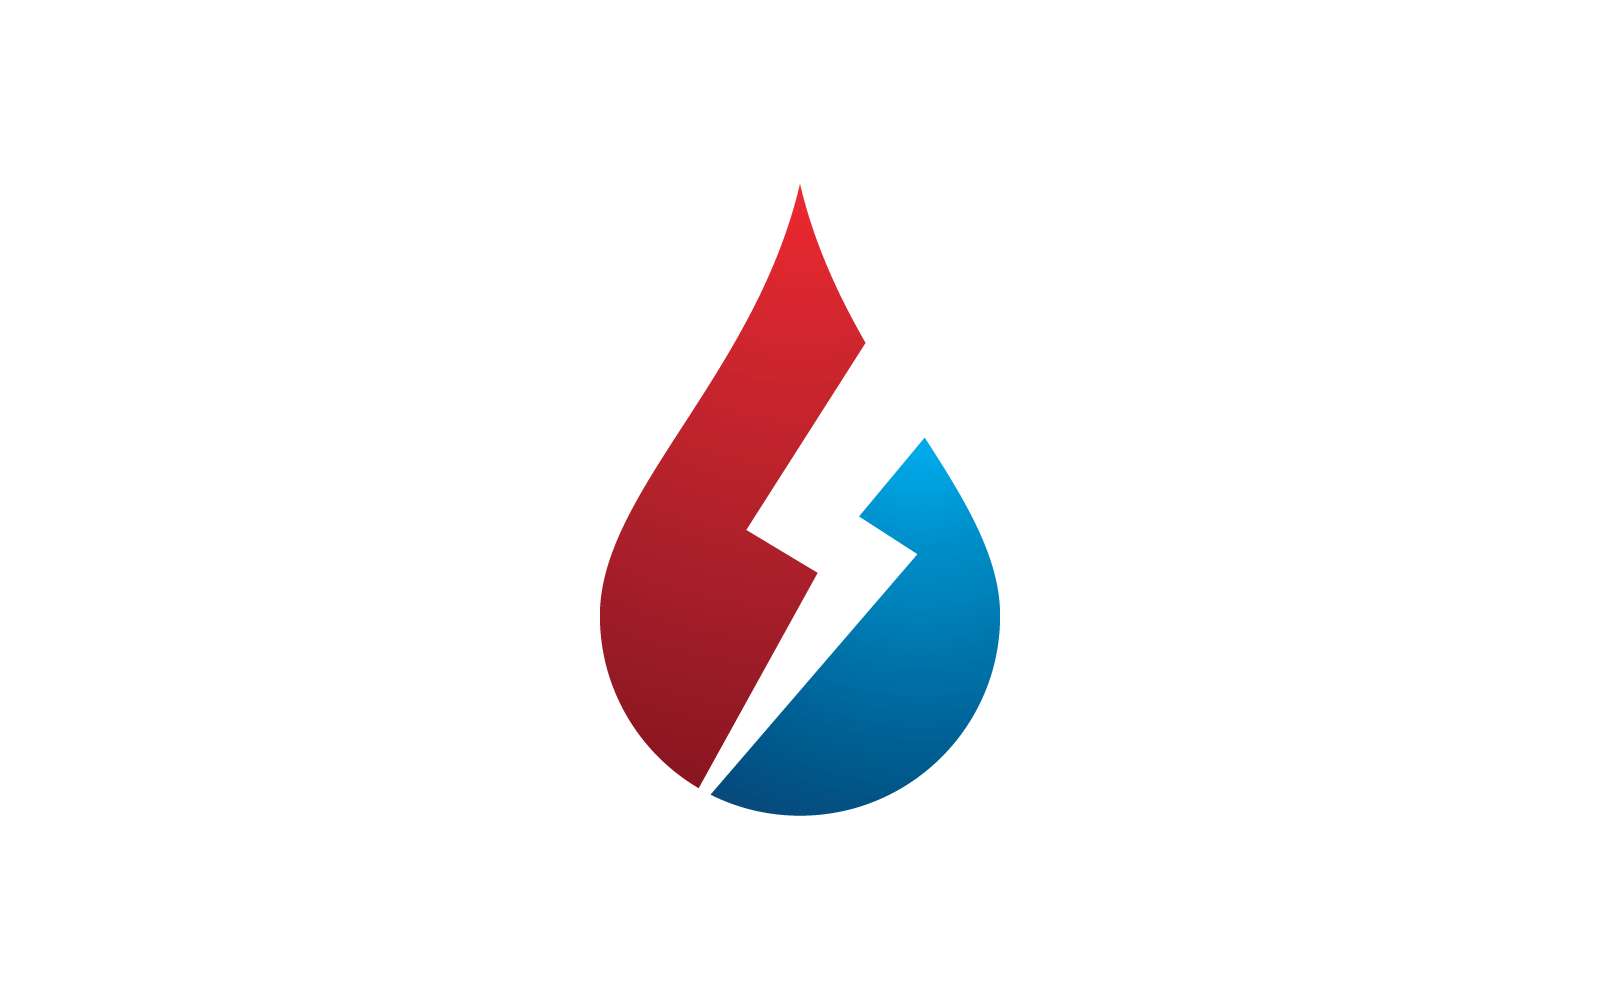 Fire flame Logo vector, Oil, gas and energy logo icon vector concept